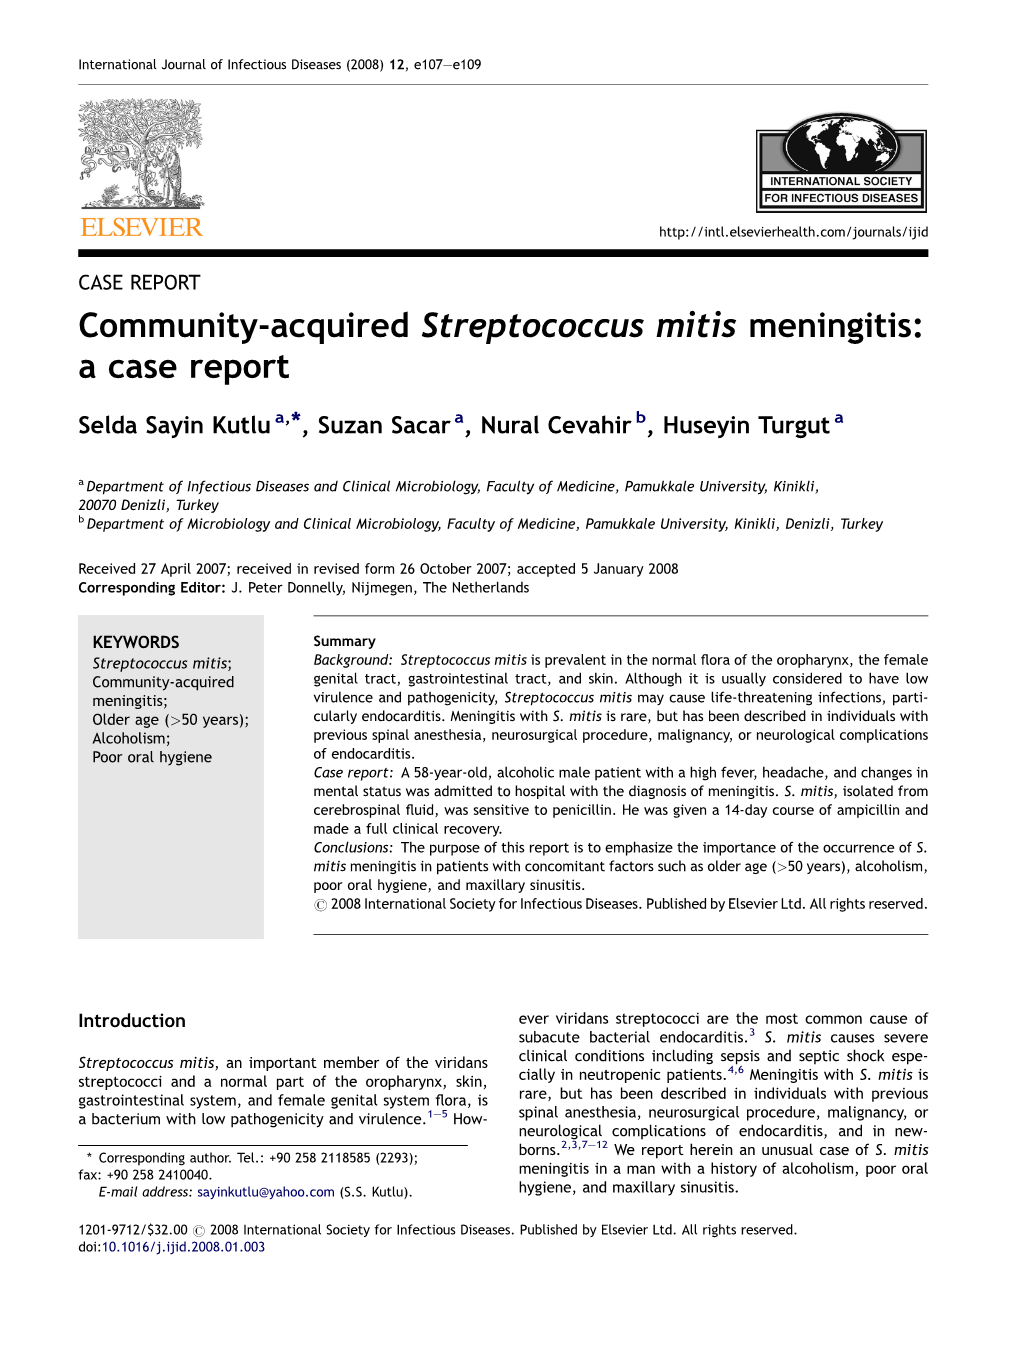 Community-Acquired Streptococcus Mitis Meningitis: a Case Report